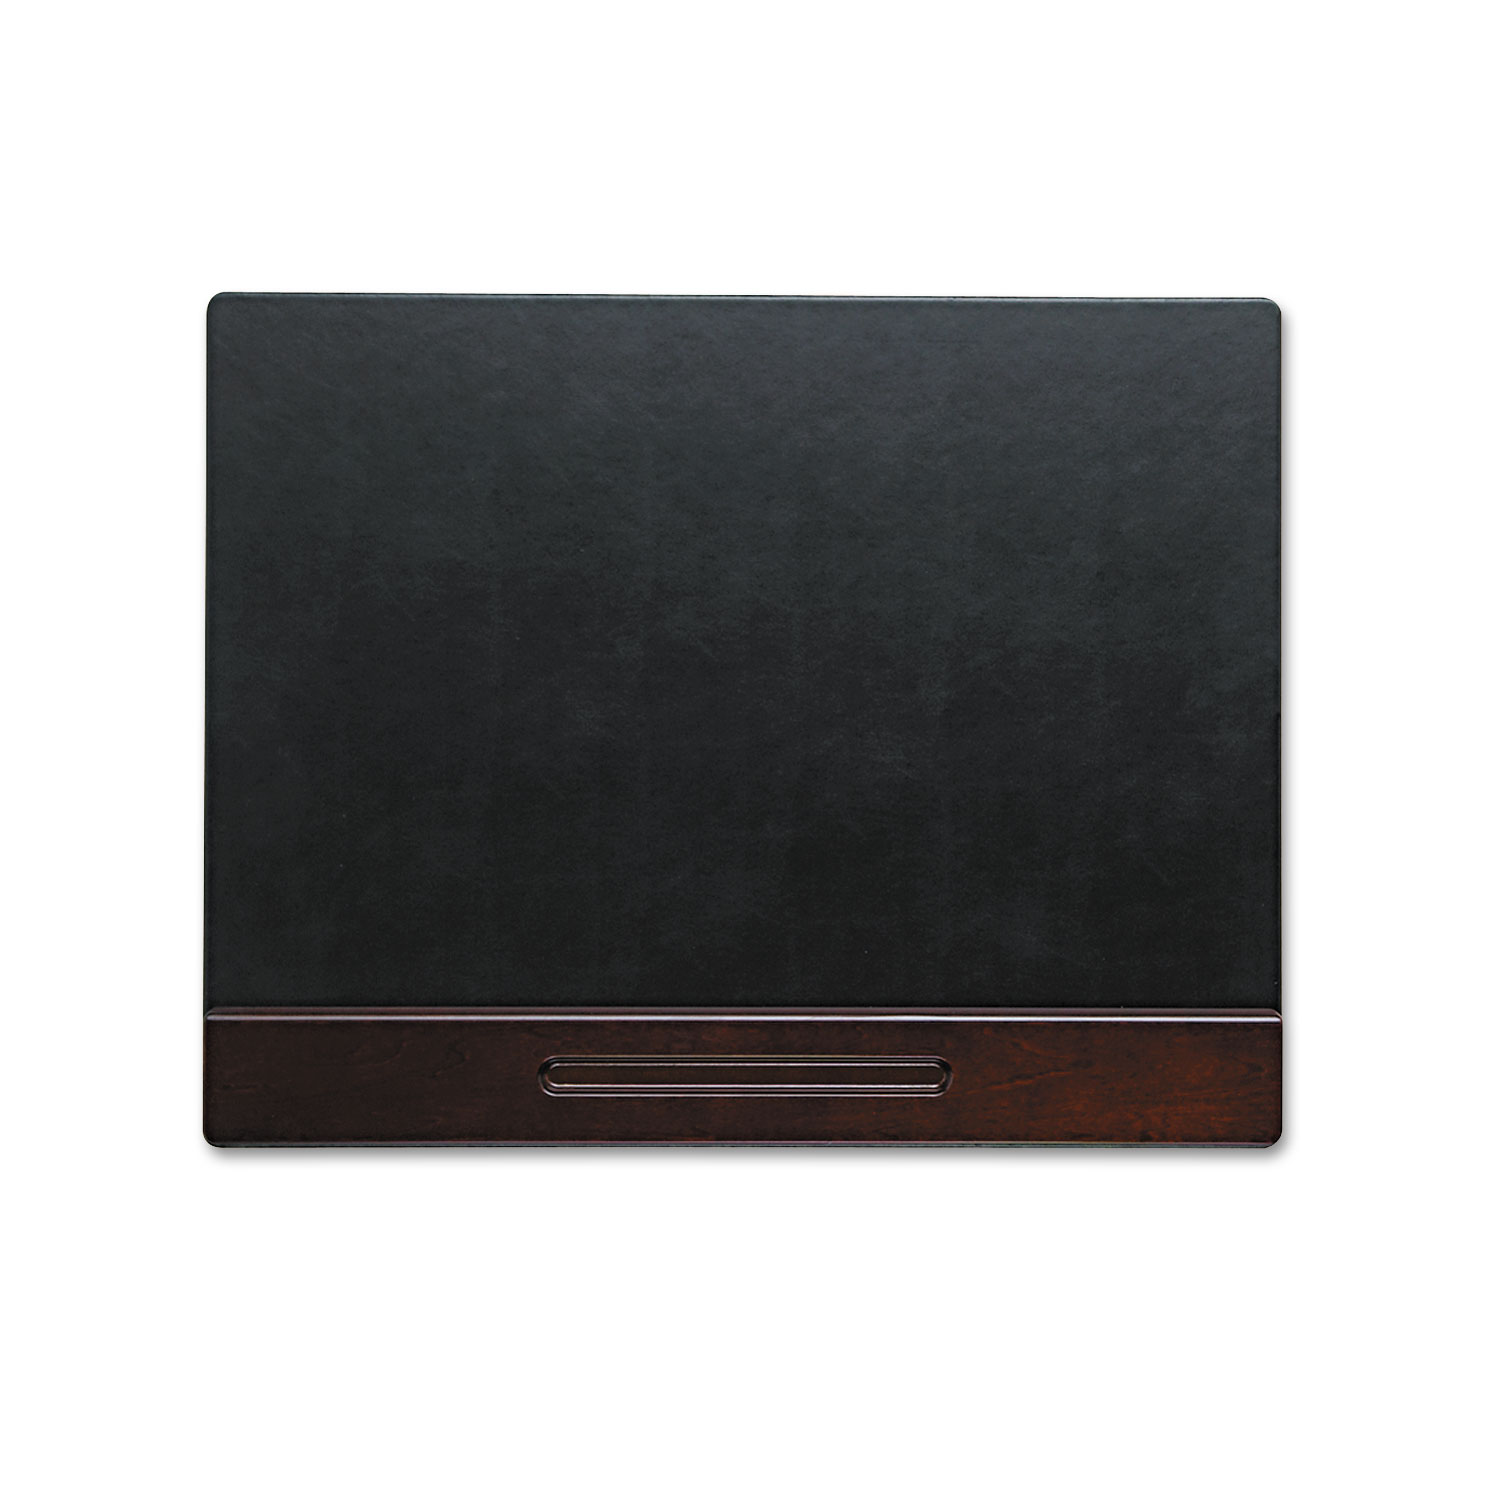  Rolodex 23390 Wood Tone Desk Pad, Mahogany, 24 x 19 (ROL23390) 